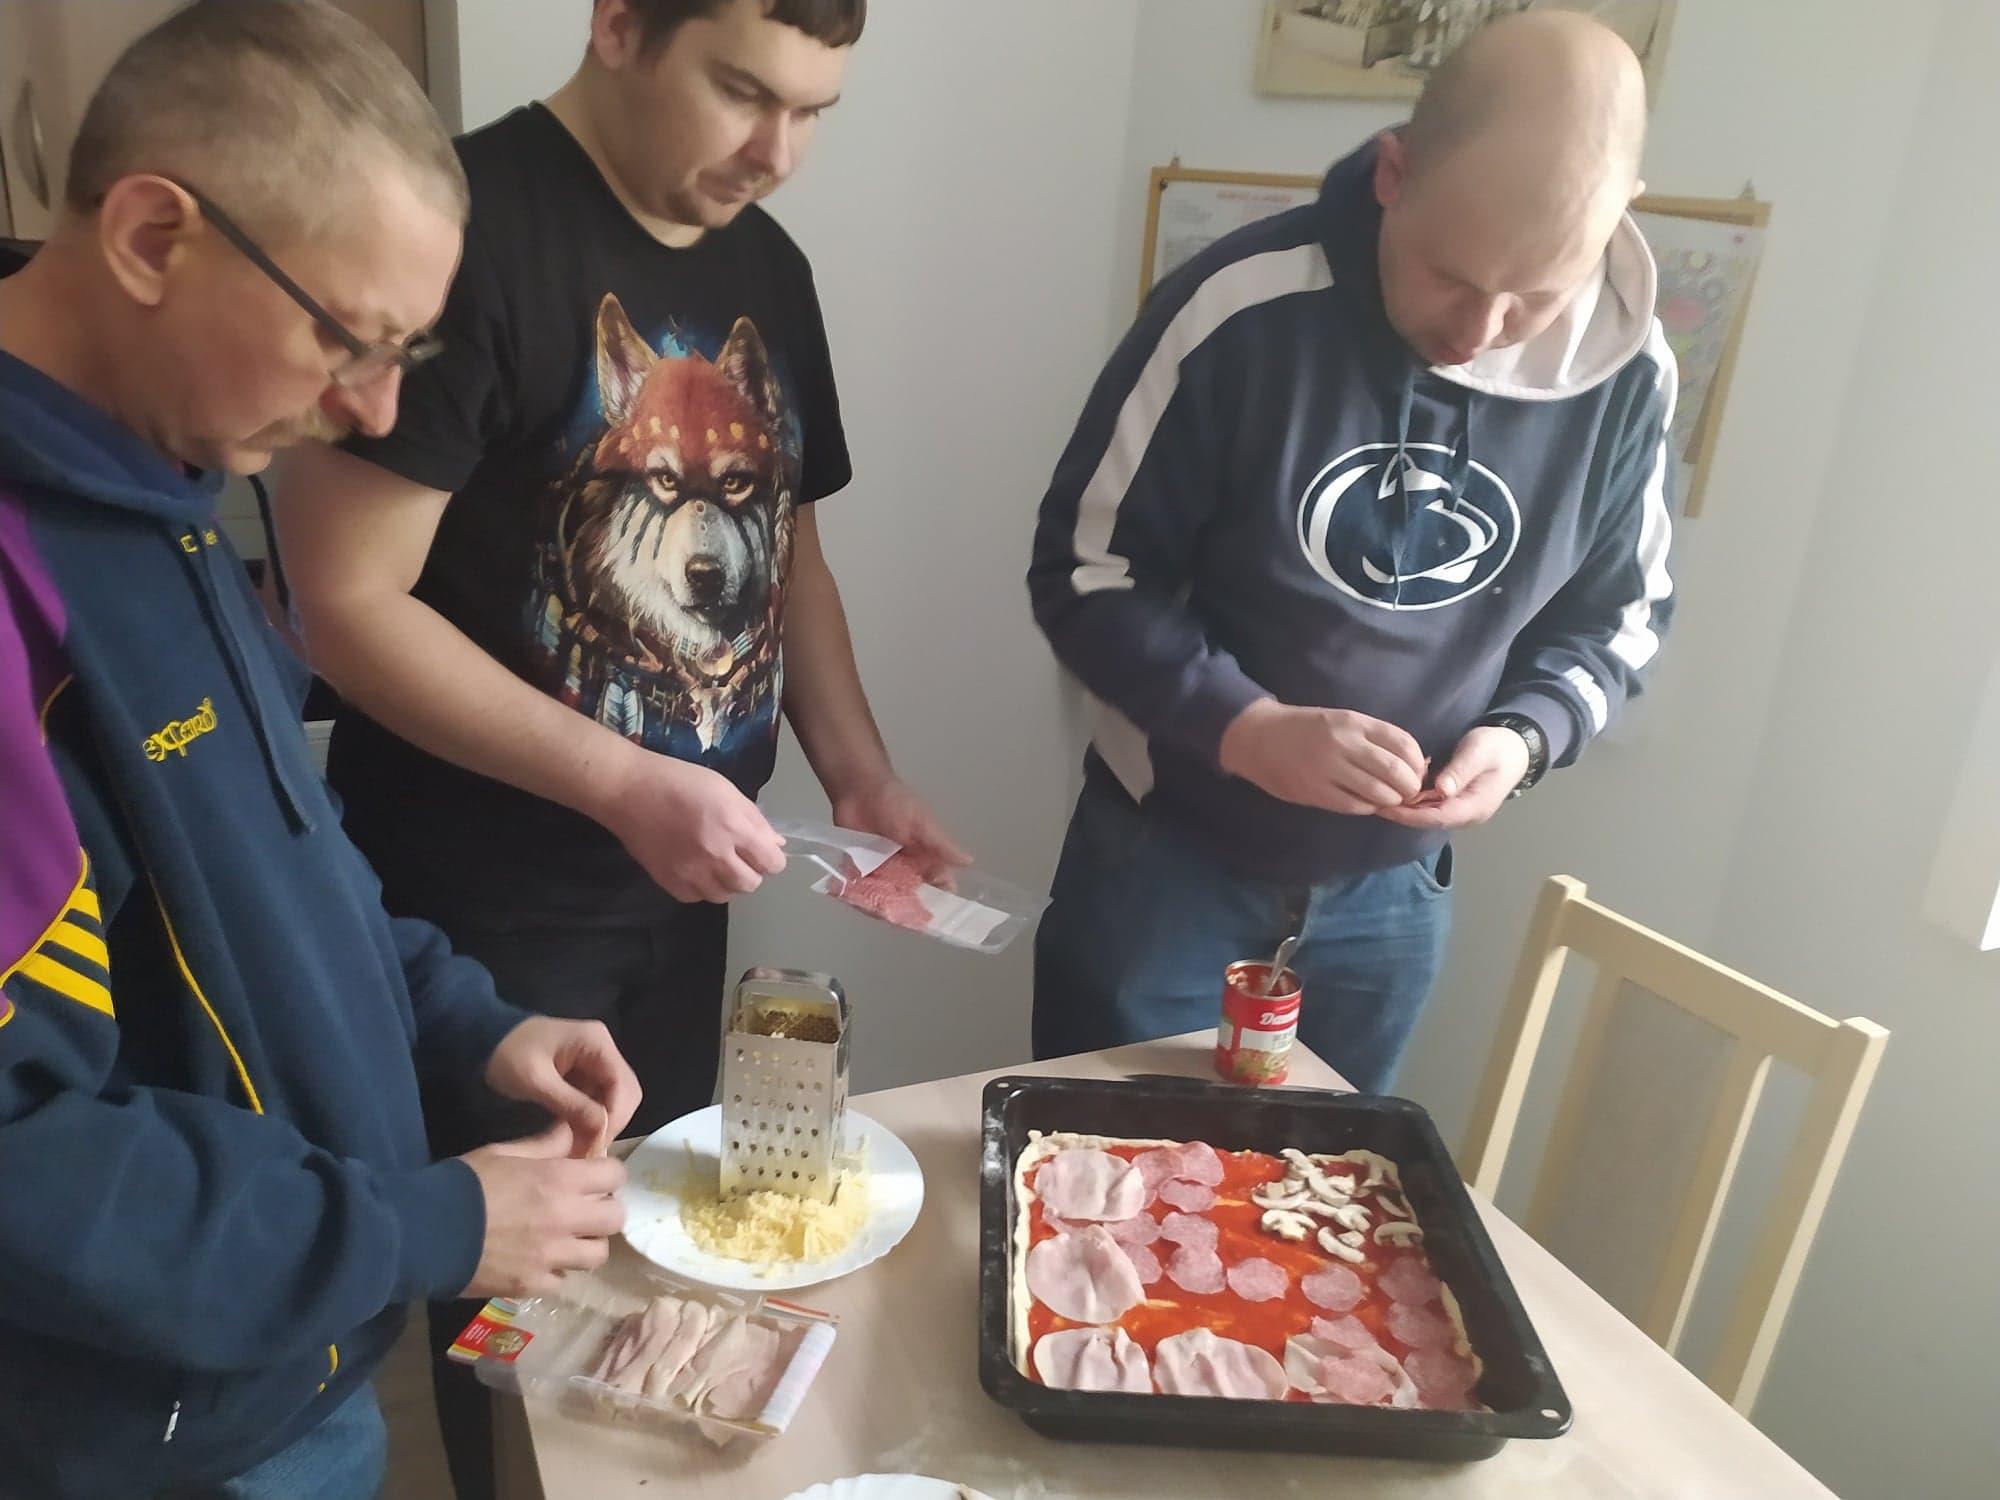 Trzech mężczyzn przygotowuje pizzę.